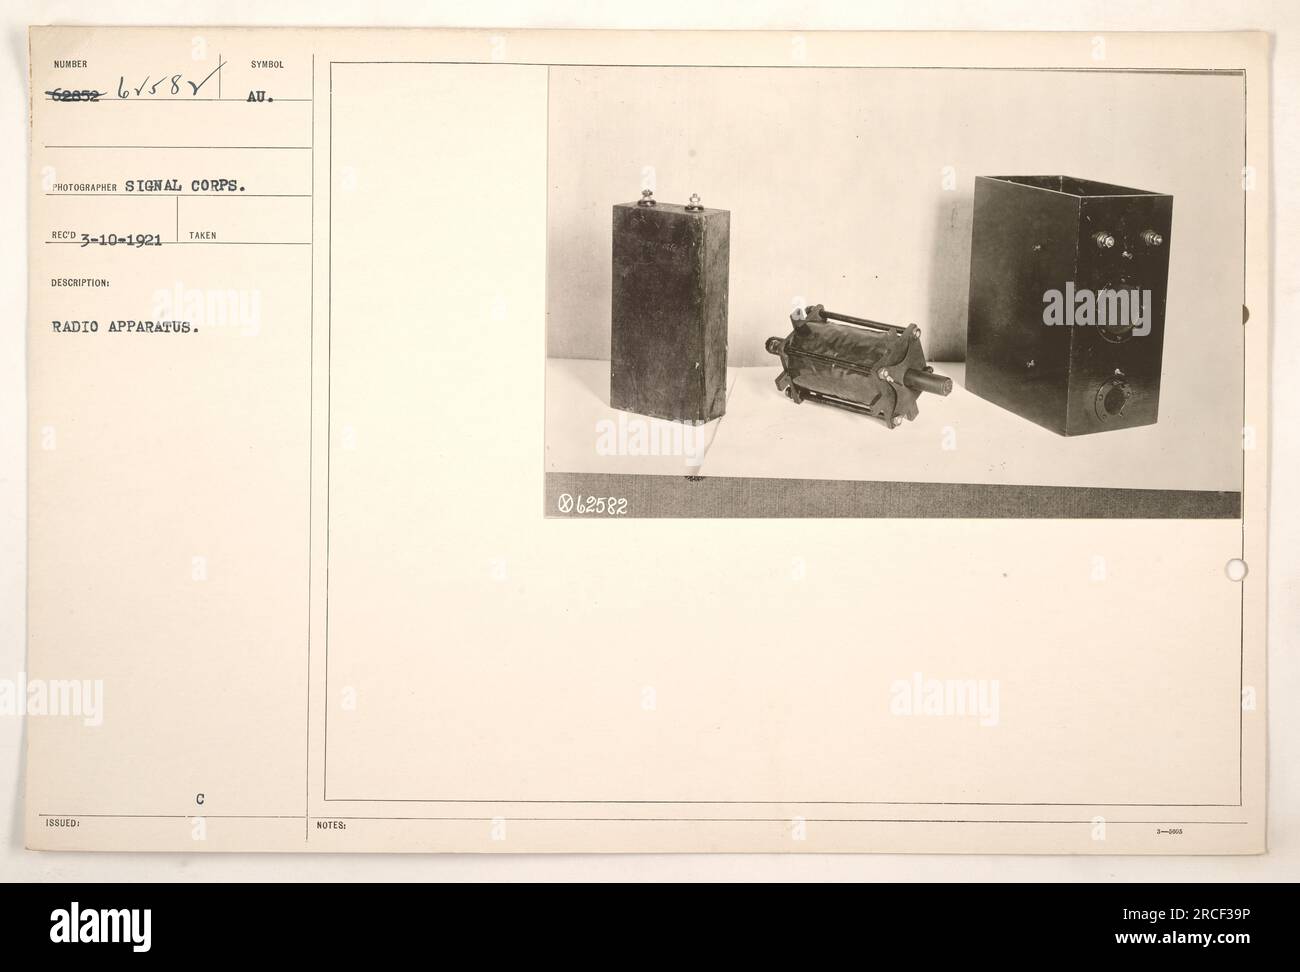 Photographie montrant un appareil radio, identifié par le numéro +b√581,  utilisé pendant la première Guerre mondiale. La photo a été prise par le  photographe du signal corps le 10 mars 1921. L'appareil